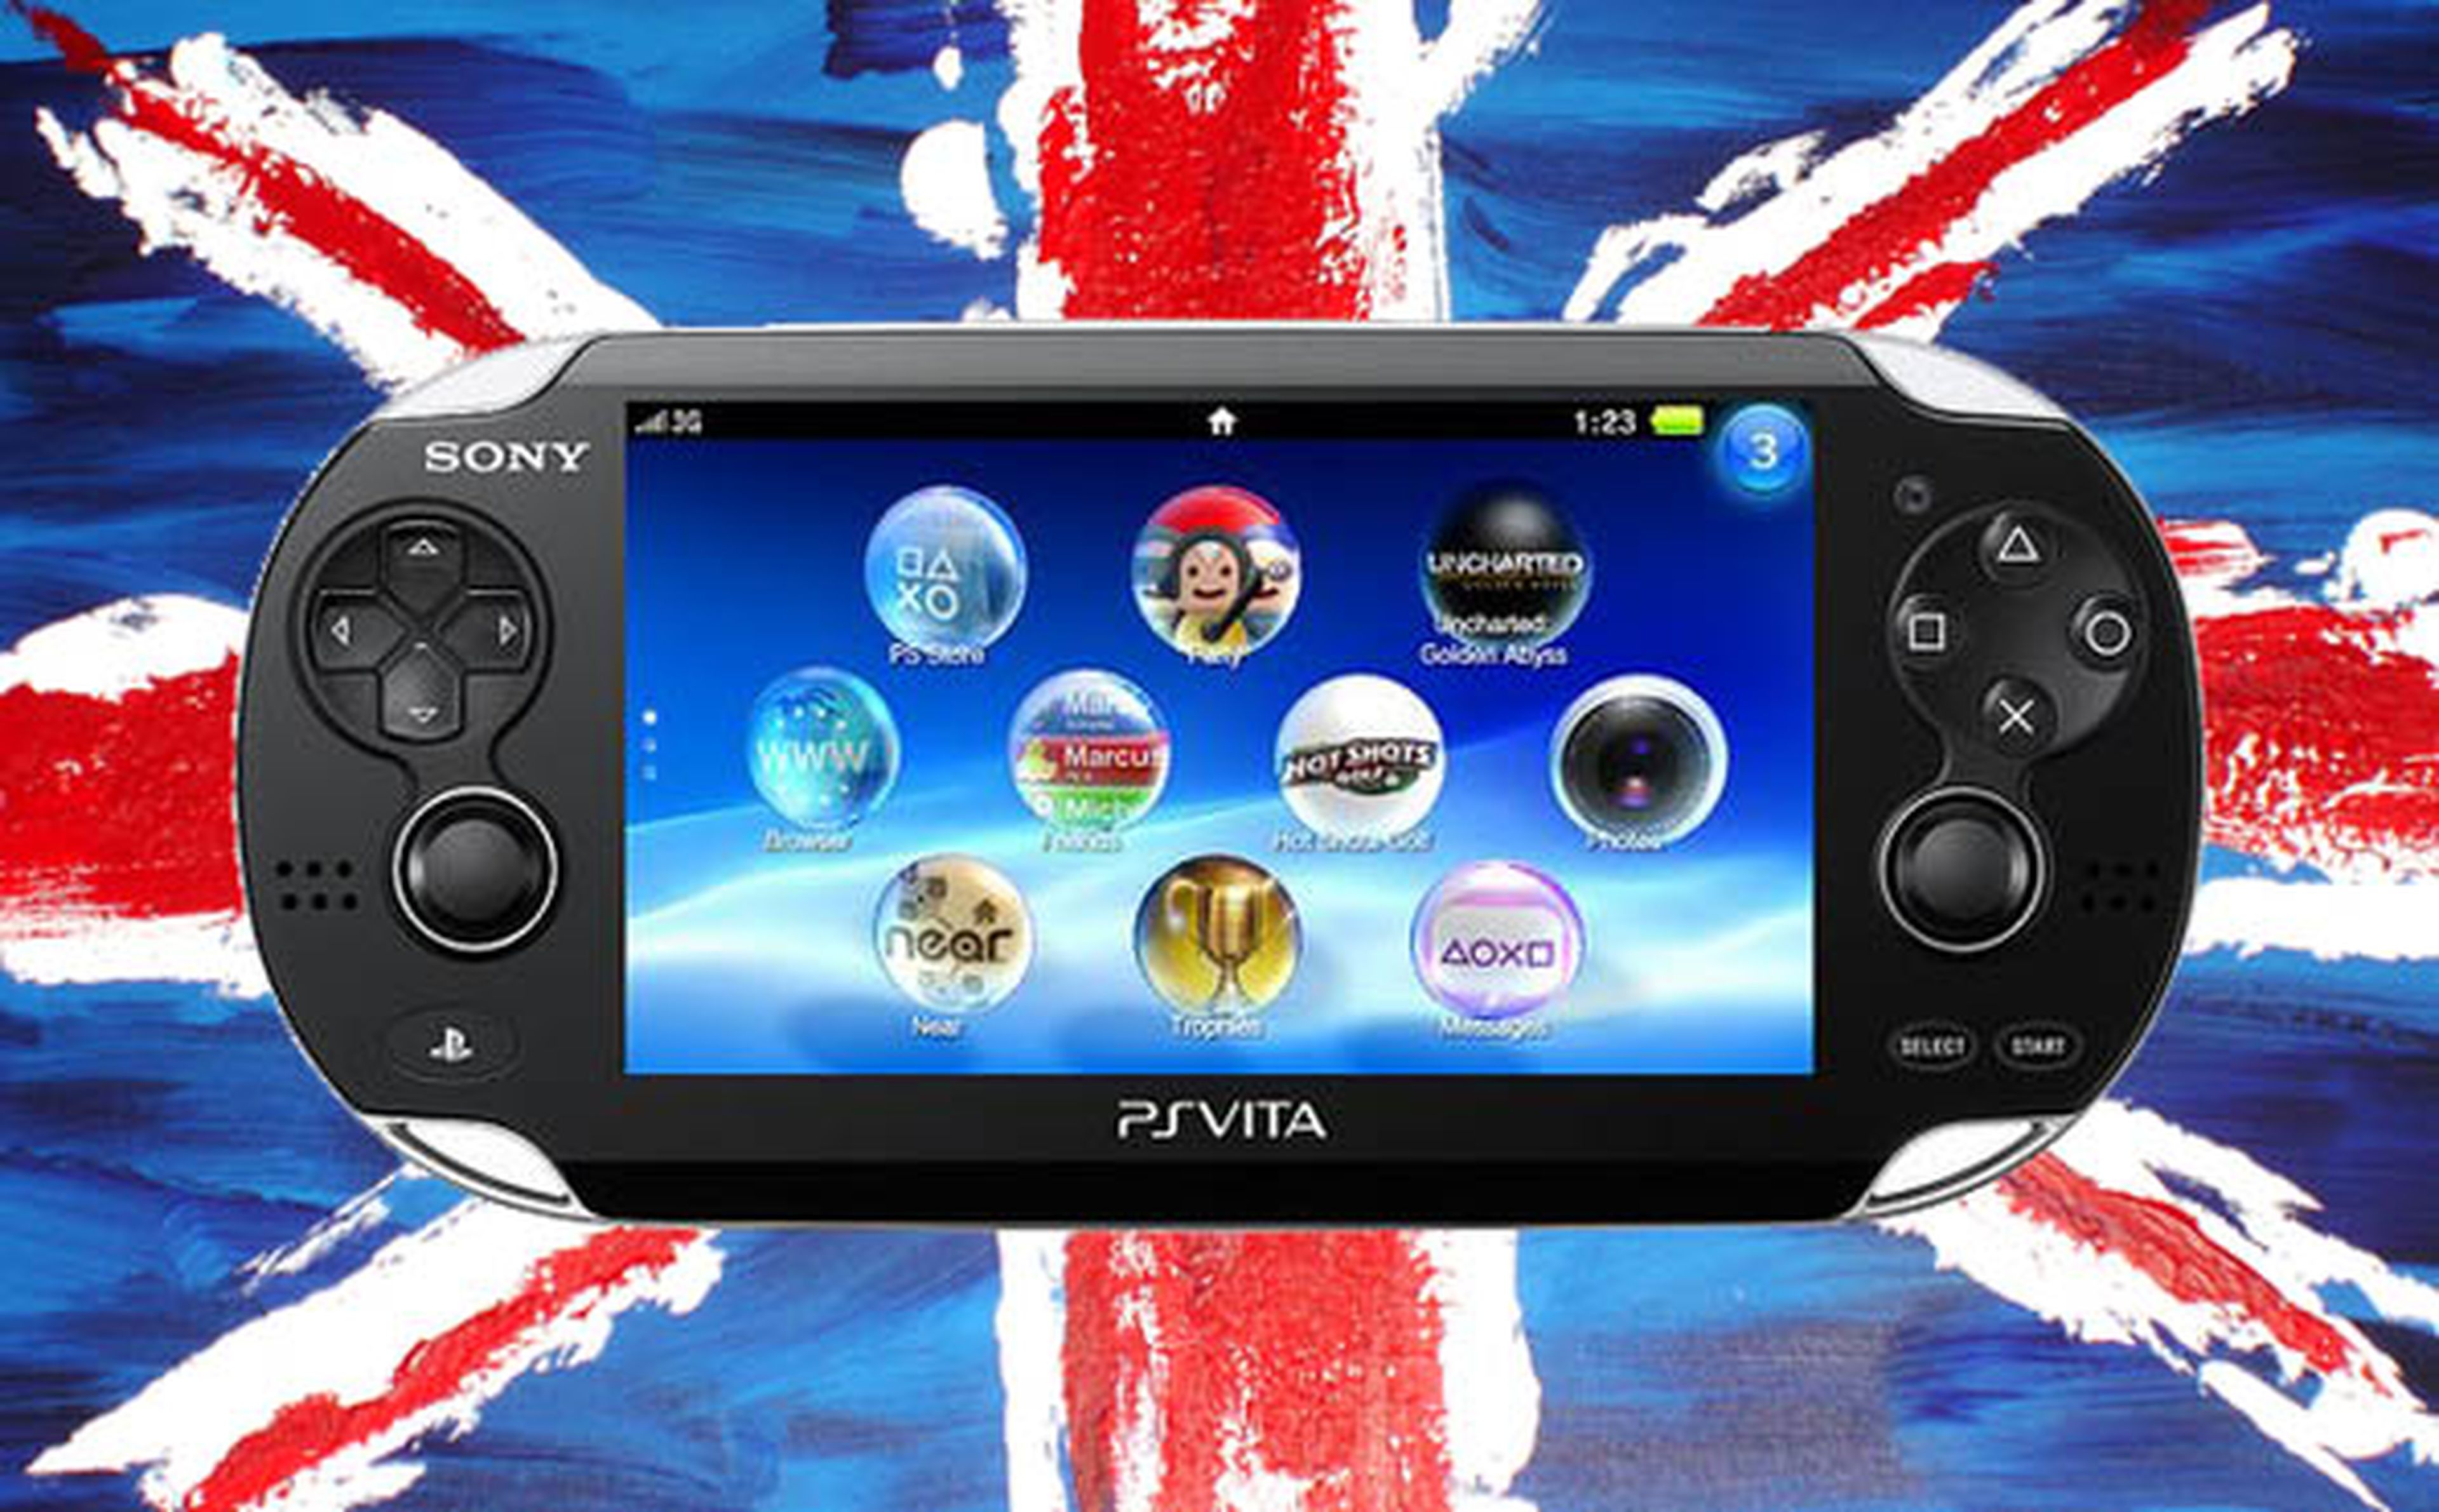 Estreno tibio de PS Vita en Reino Unido